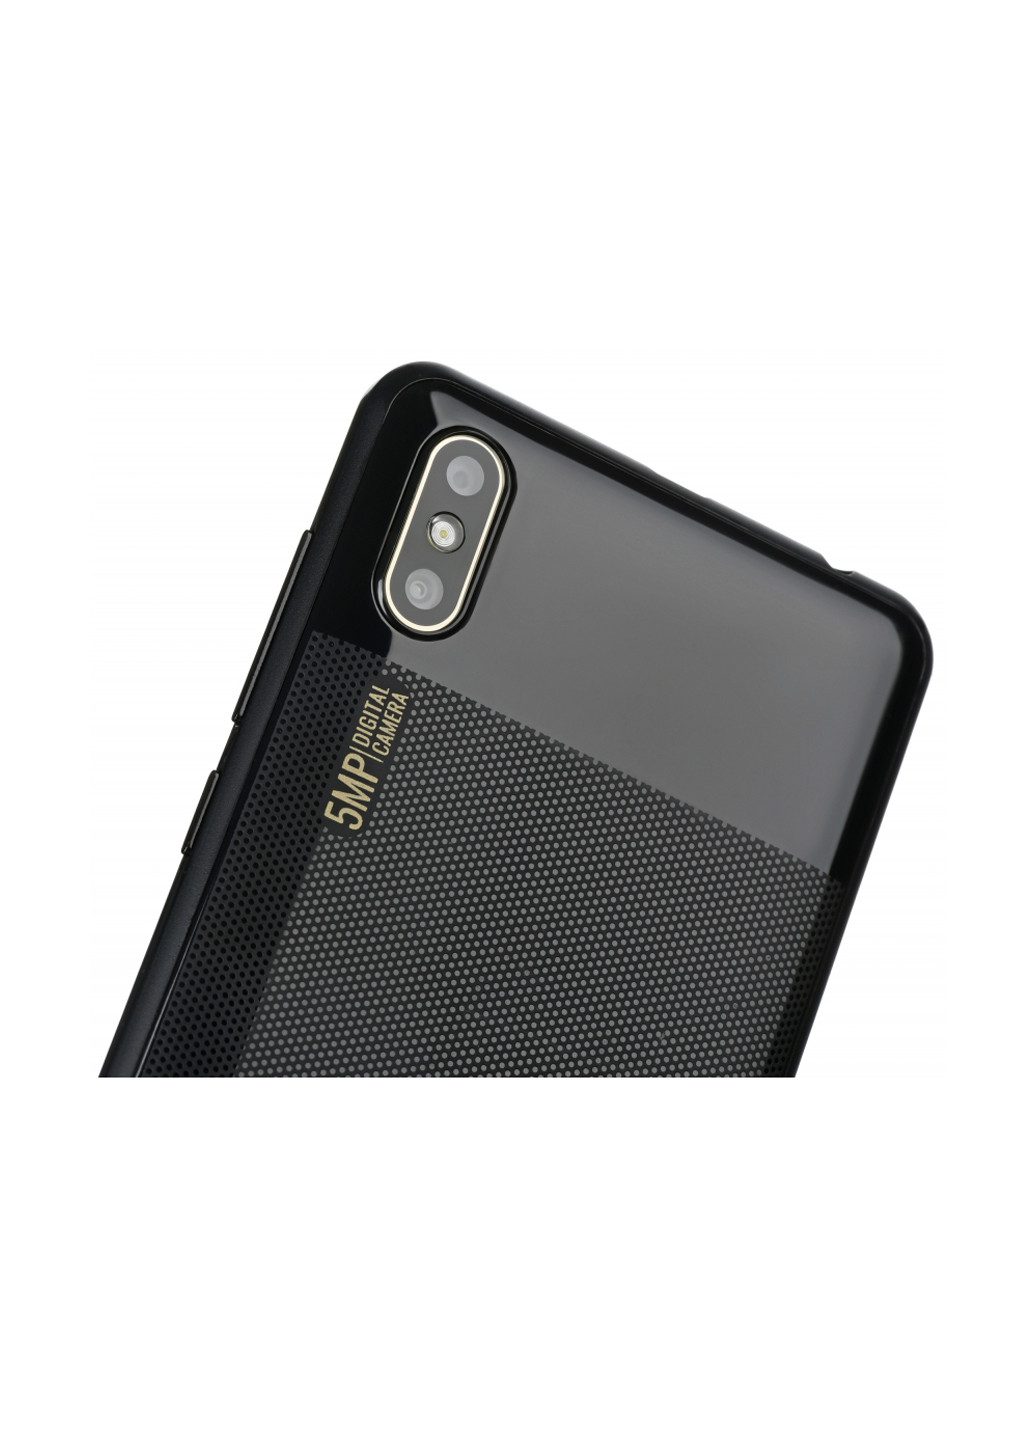 Смартфон 2E E500A 2019 1/8GB Black (680051628677) чёрный